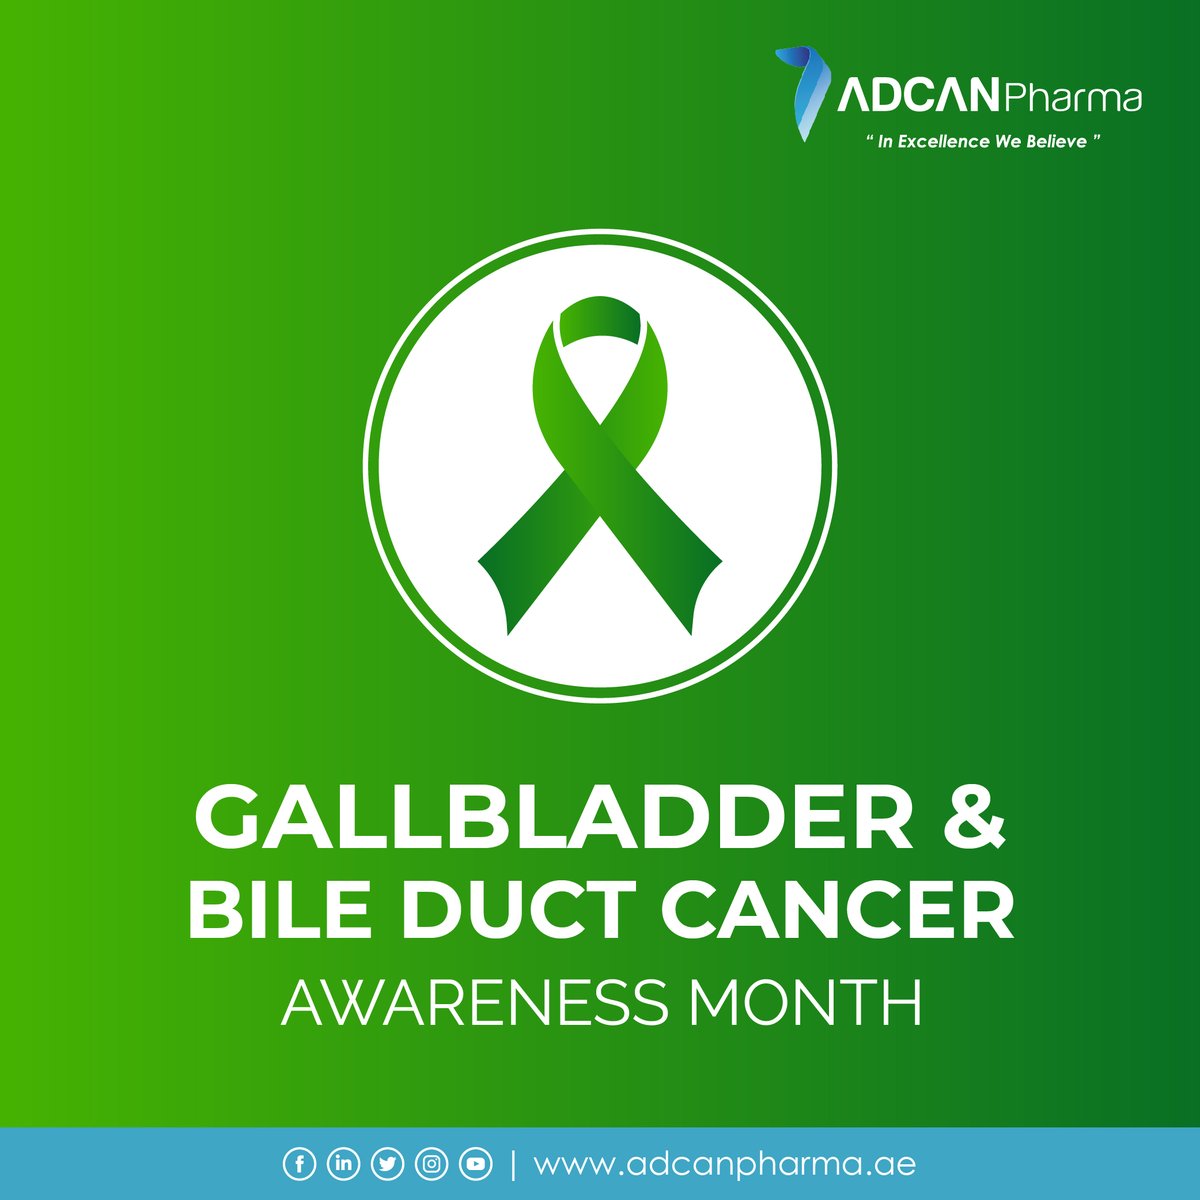 'Gallbladder cancer and bile duct cancer are relatively rare forms of cancer.'
#cáncerawarenessmonth #gallbladderproblems #câncer #awareness #oncology #oncologymanufacturer #adcanpharma